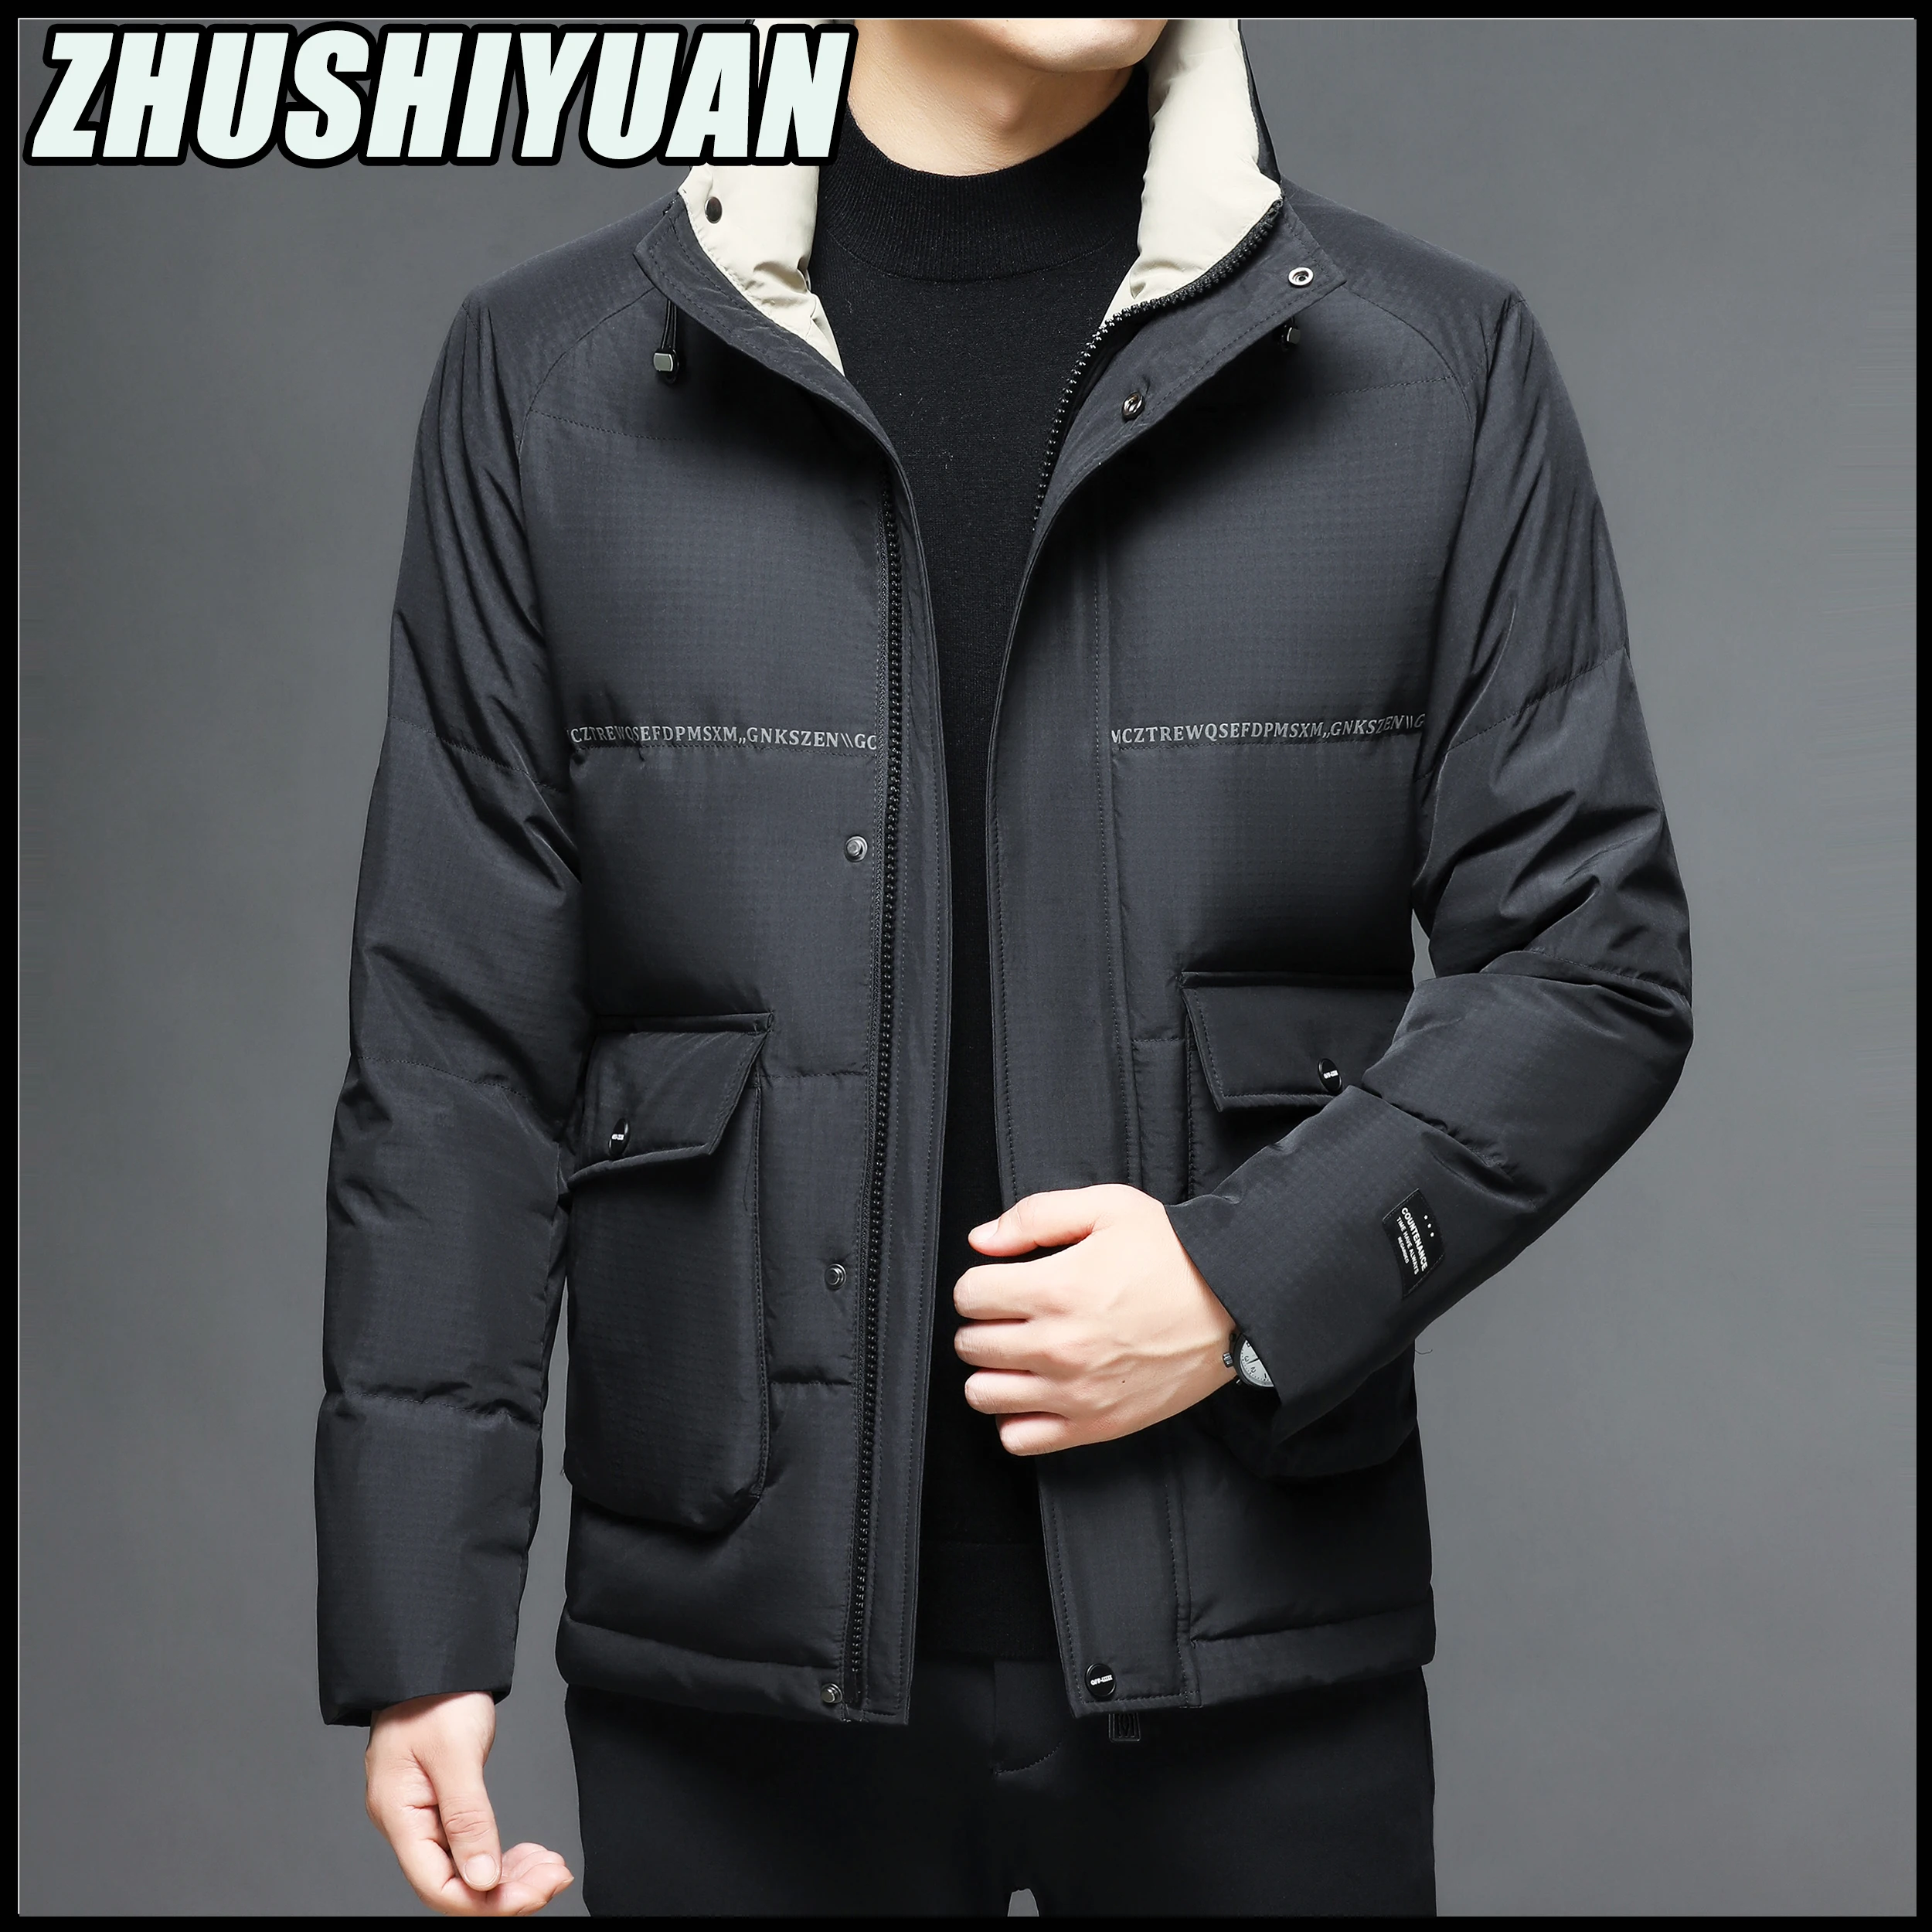 New Style Winter Jacket Men Parkas Fashion Thicken Warm Coat Jackets Manteaux Ceketler Black Doudoune Homme Jaquetas Ropa Hombre